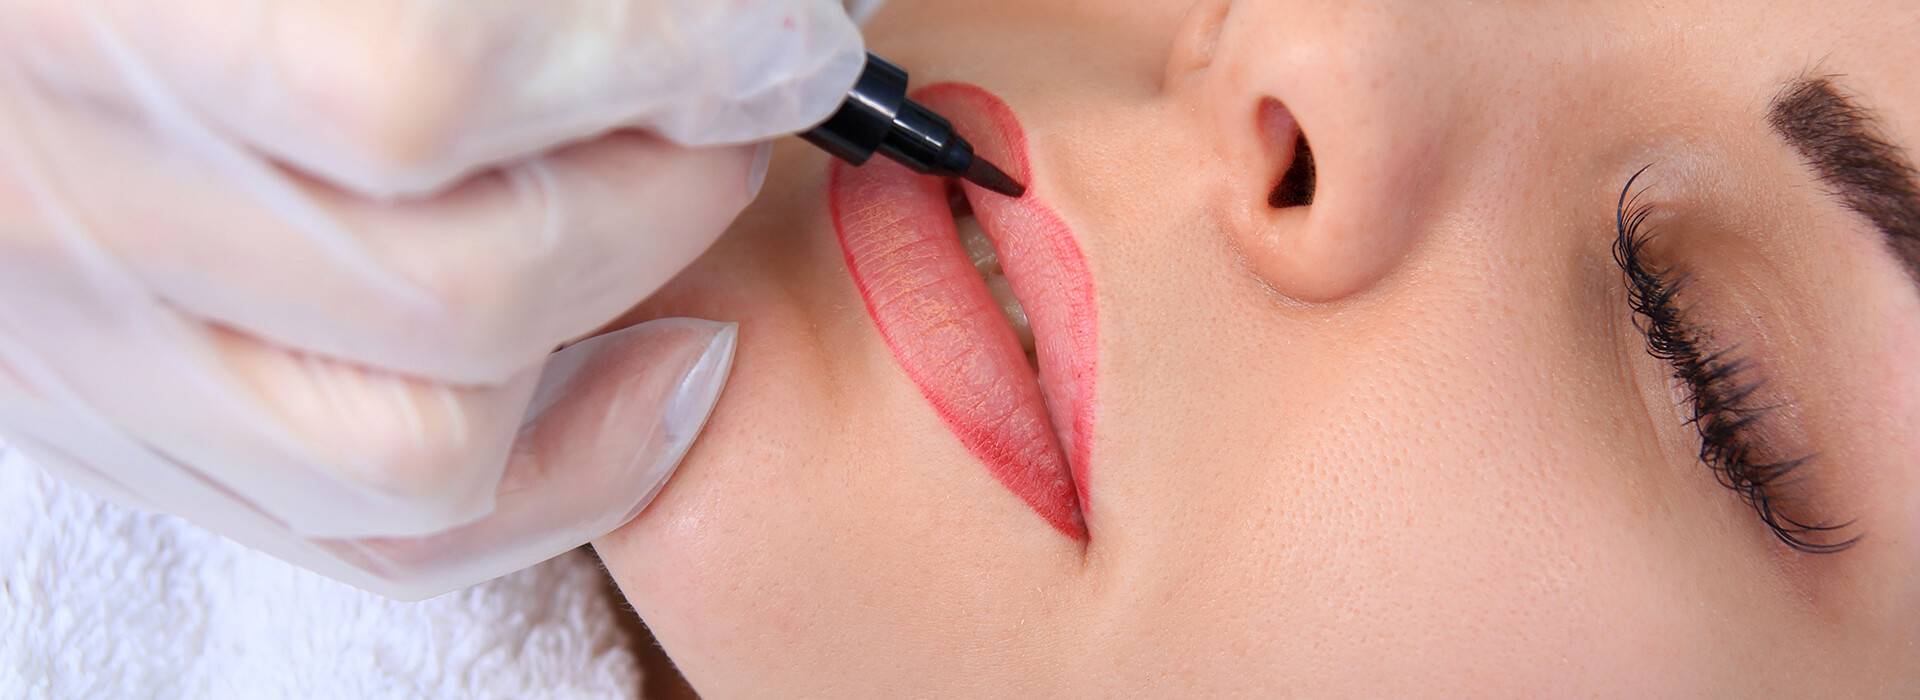 Татуаж губ стоит ли его делать, основные секреты процедуры